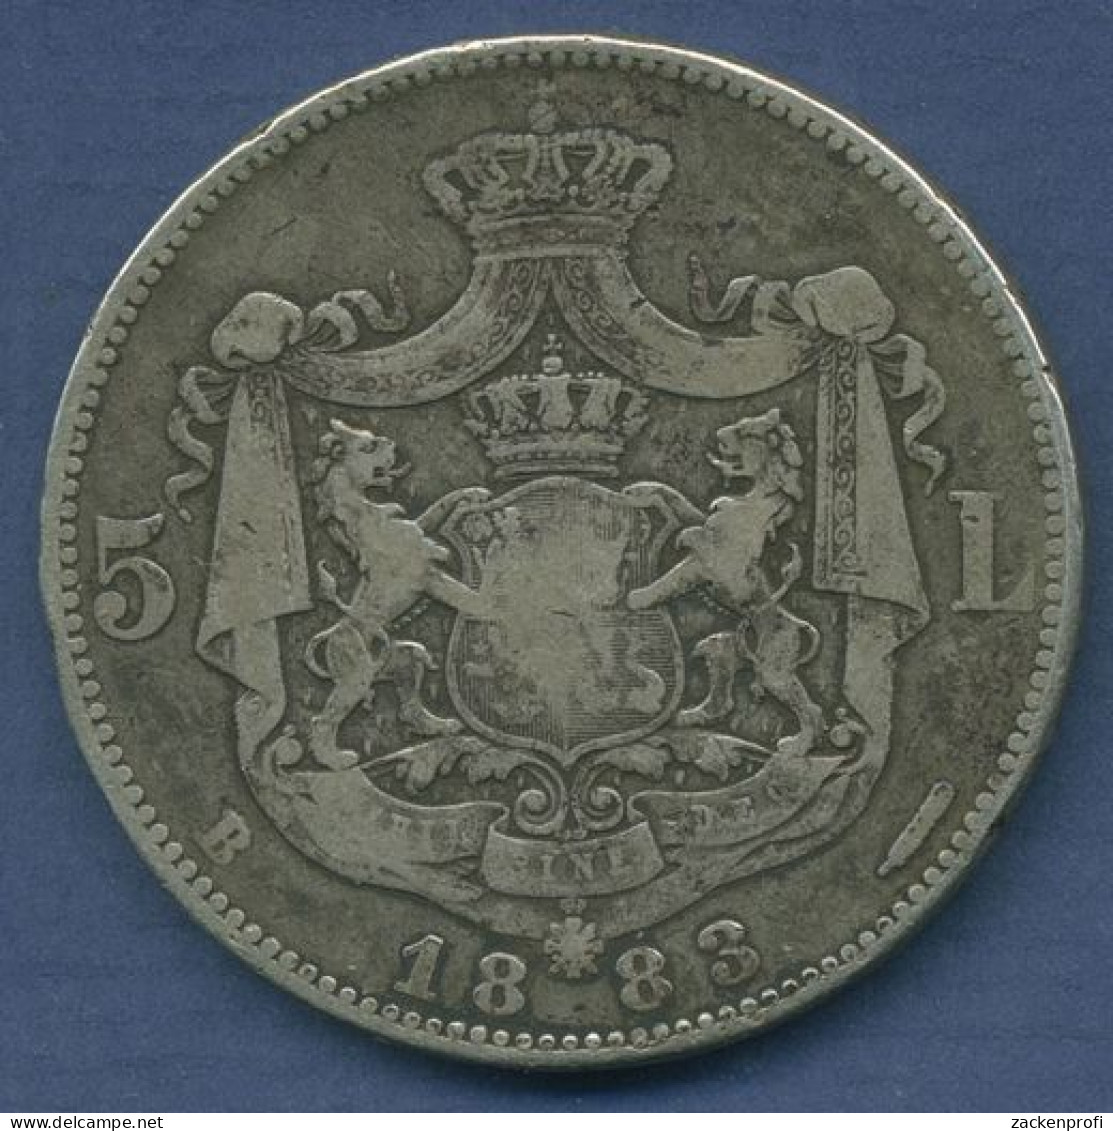 Rumänien 5 Lei 1883 B, Carol I., KM 17.1 Schön - Sehr Schön (m3937) - Roemenië